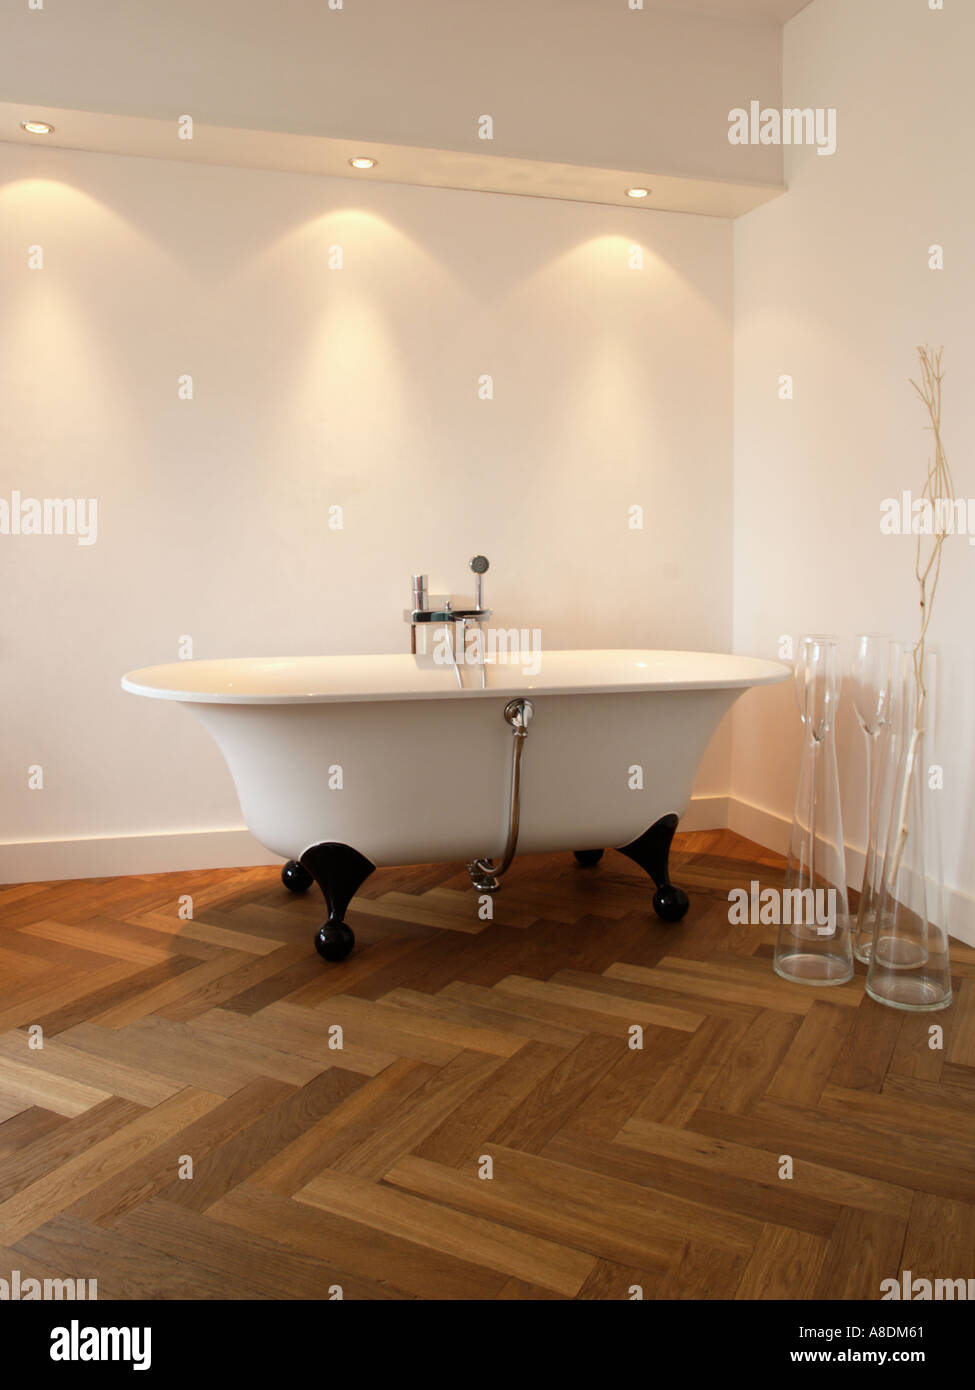 Baño de diseño con espiguilla iluminación halógena de parquet y baño independiente Foto de stock